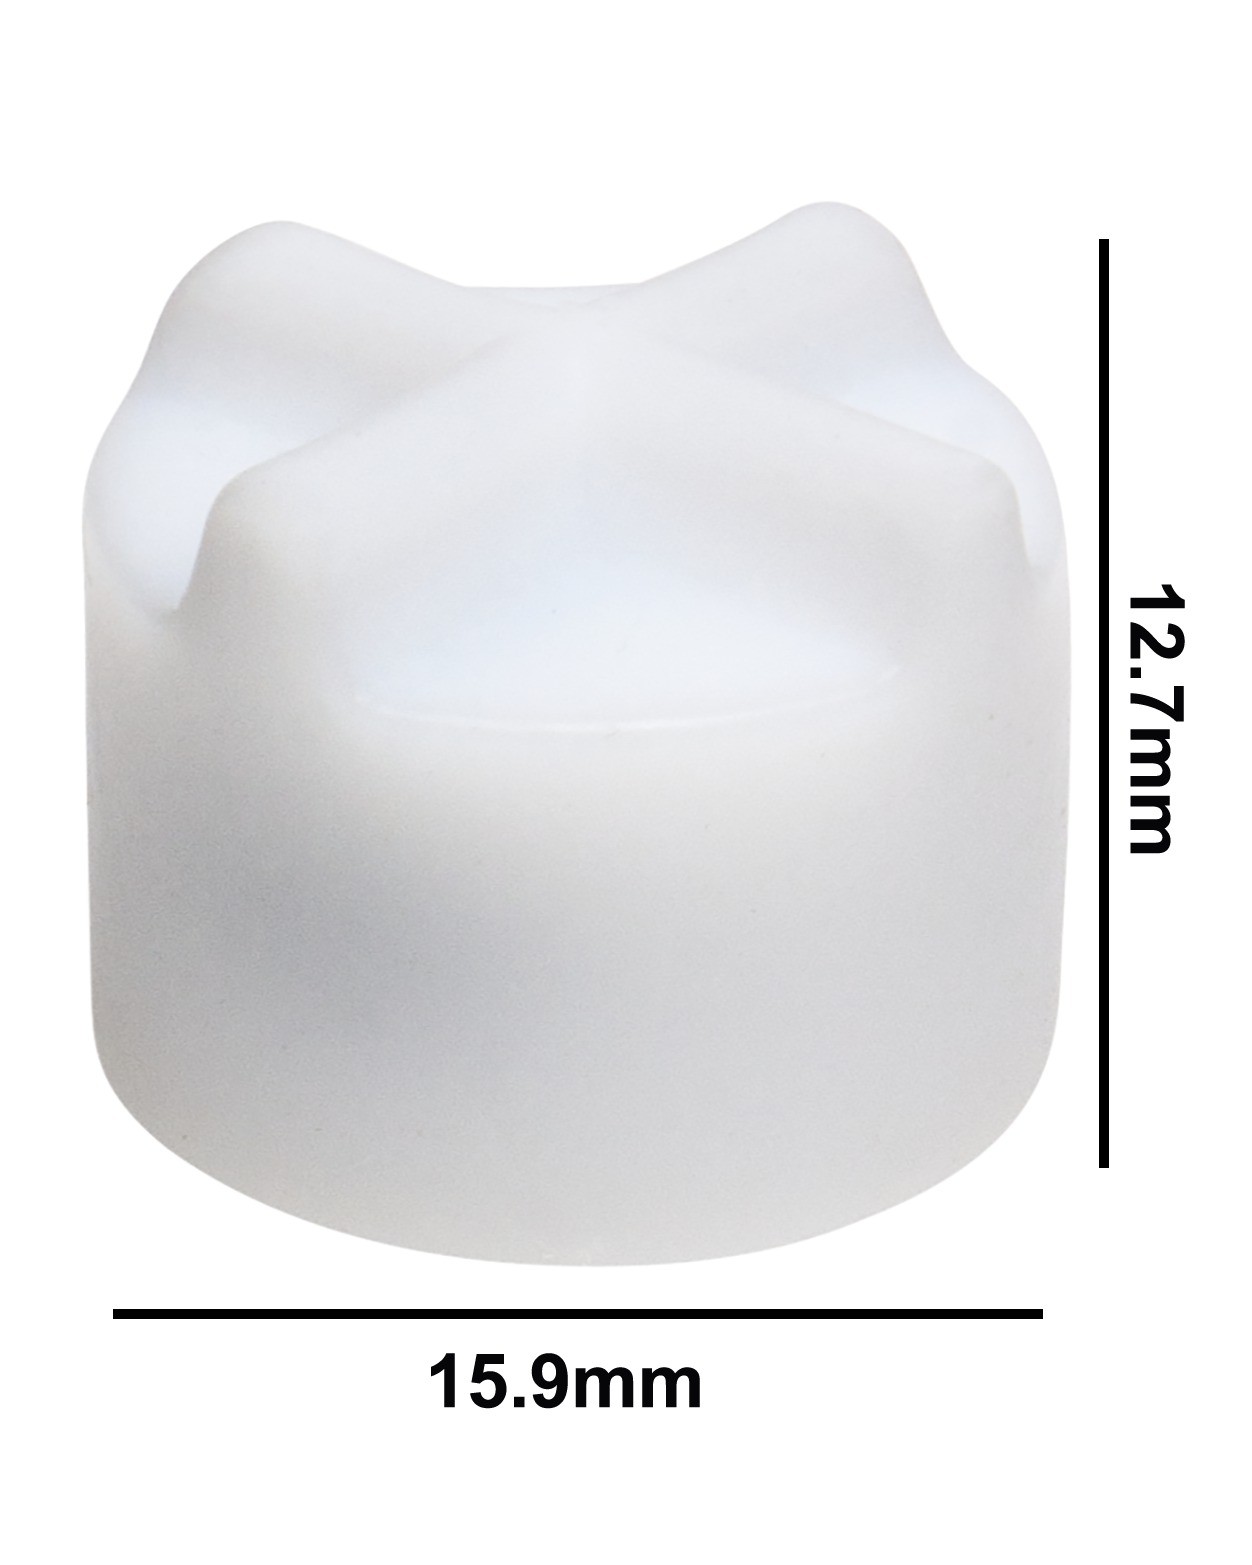 SP Bel-Art Spinfin Teflon Magnetic Stirring Bar; 15.9 x 12.7mm, White